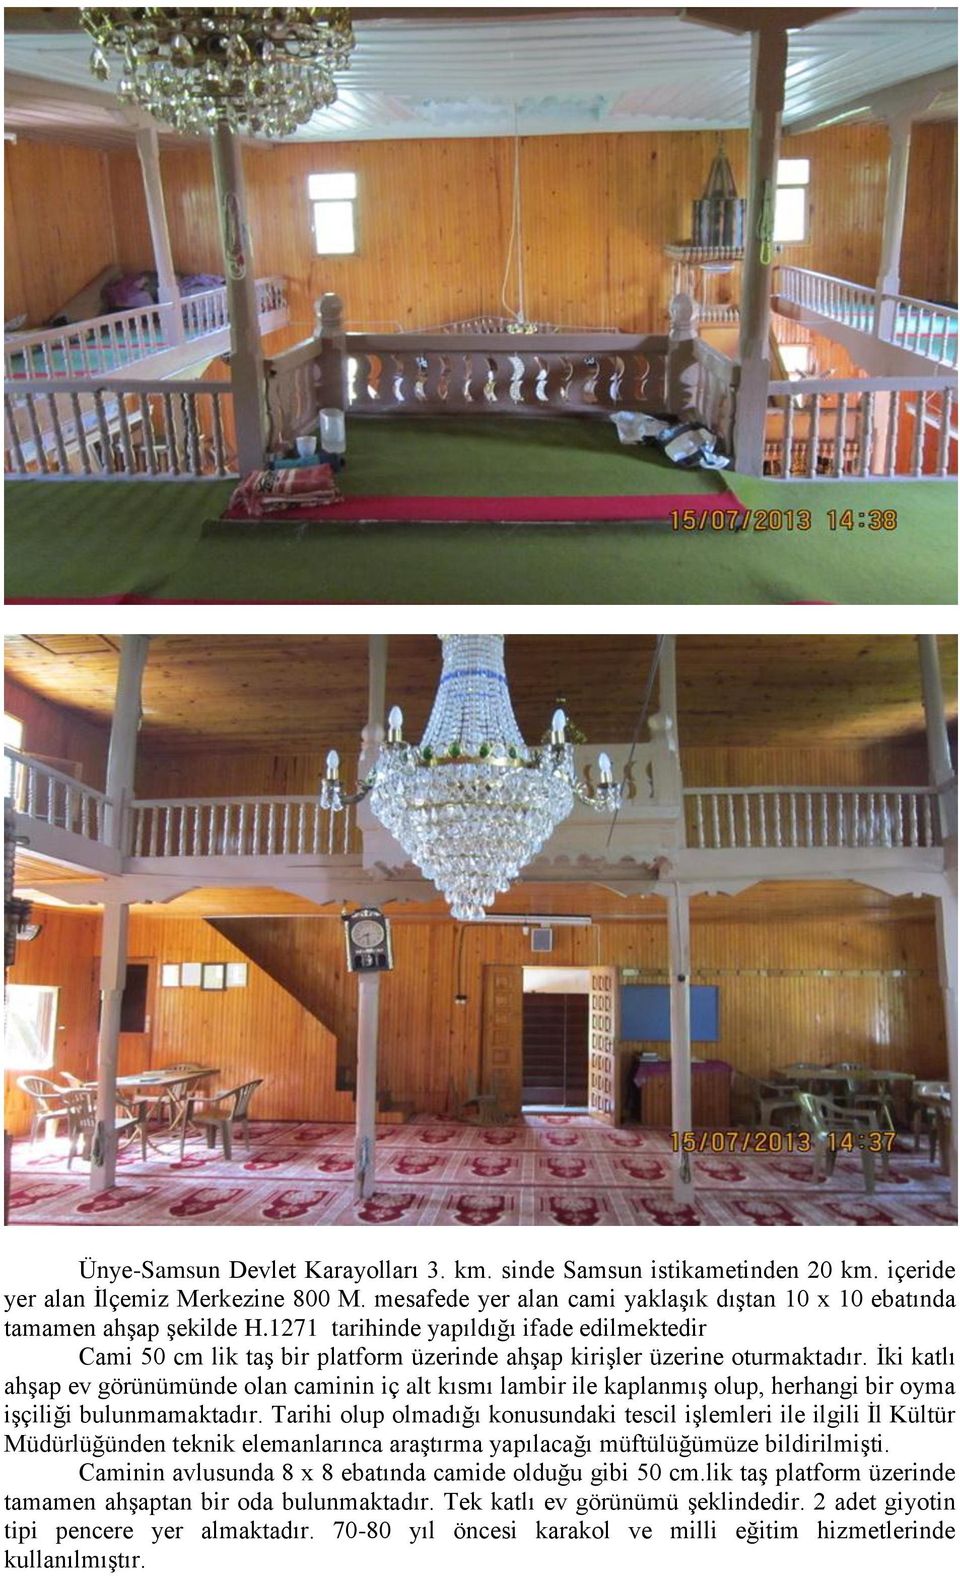 İki katlı ahşap ev görünümünde olan caminin iç alt kısmı lambir ile kaplanmış olup, herhangi bir oyma işçiliği bulunmamaktadır.